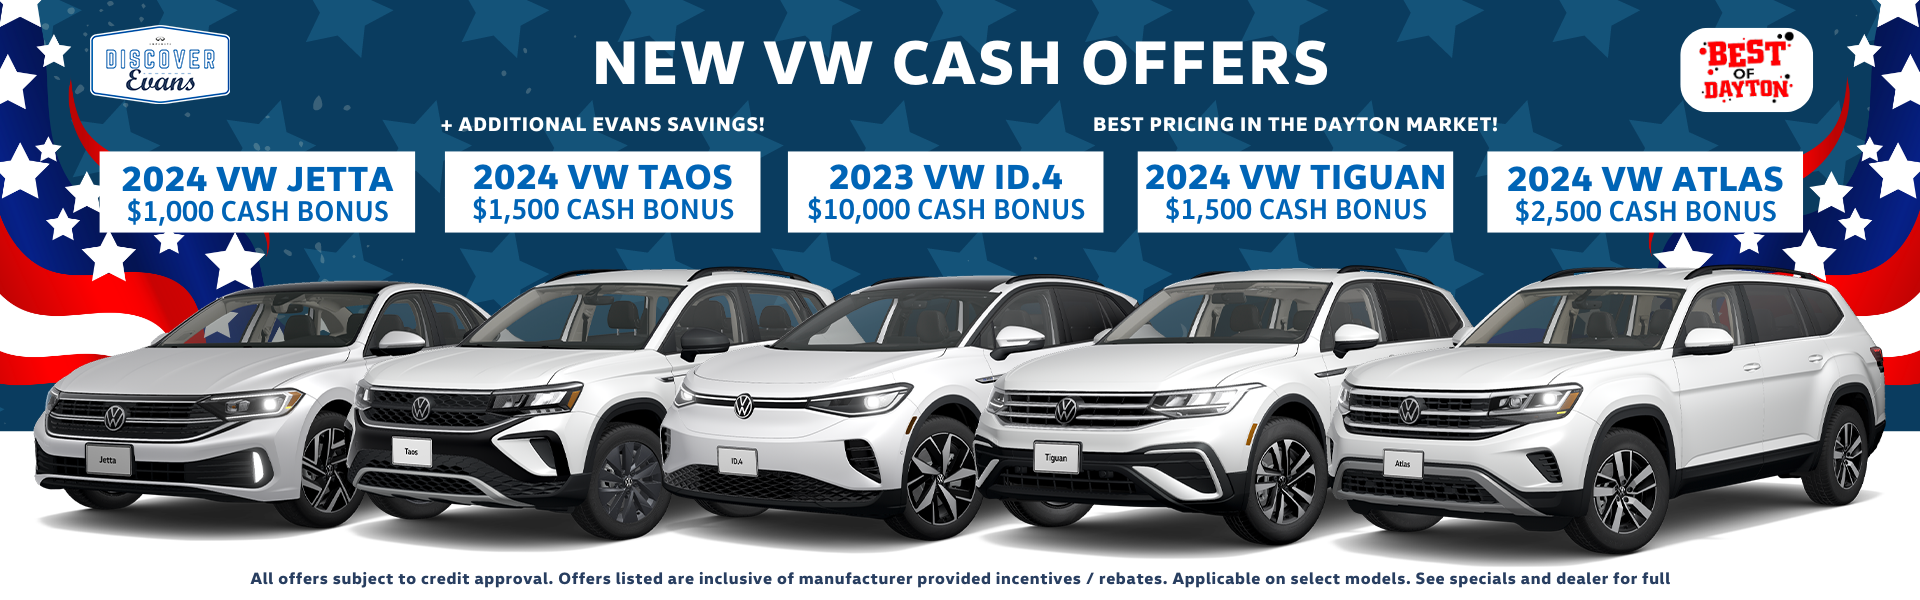 Evans Volkswagen Cash Bonus Offers